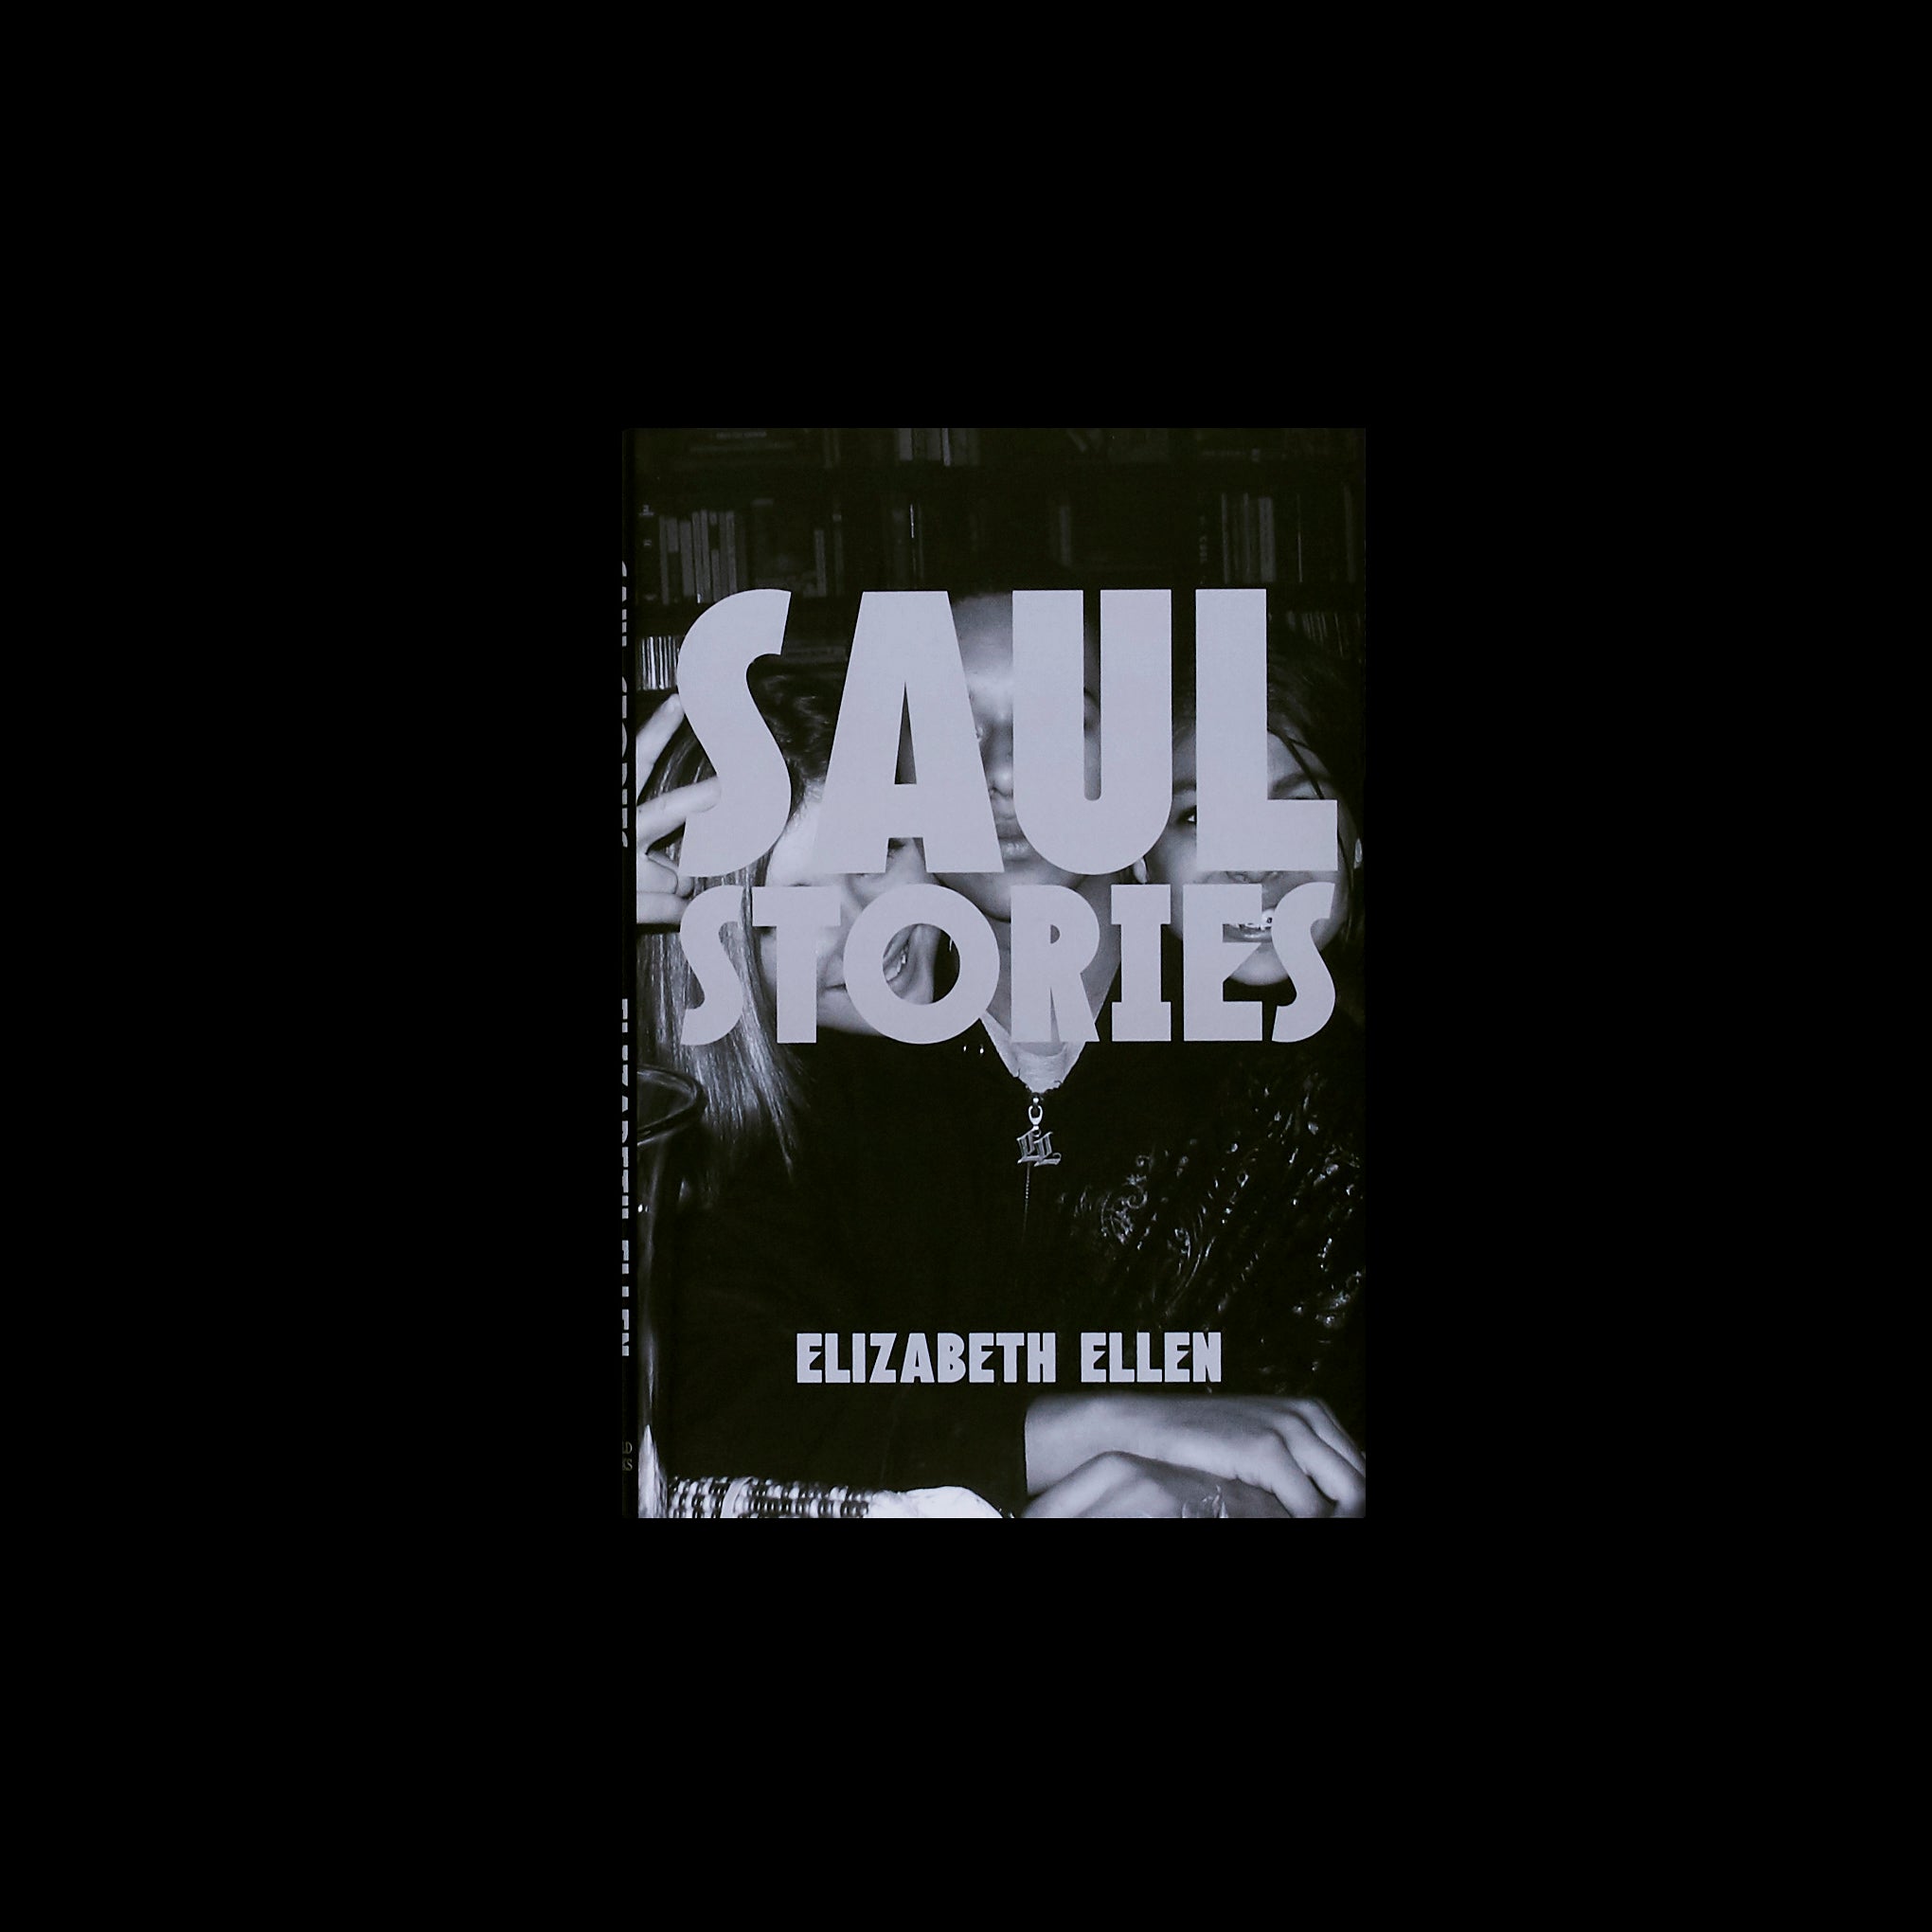 Elizabeth Ellen - Saul Stories